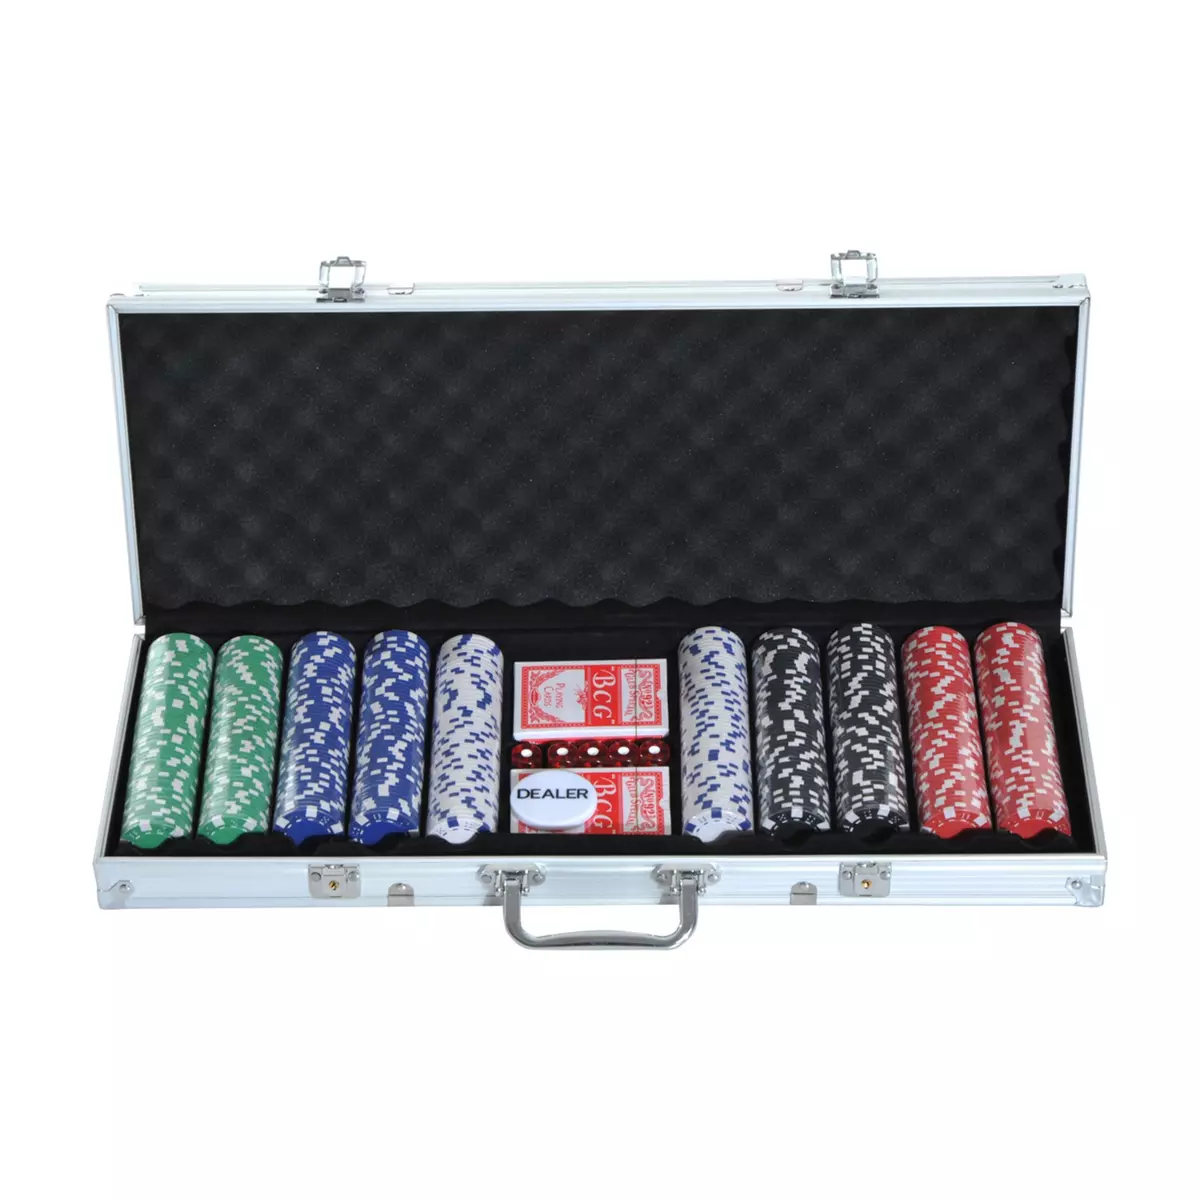 HOMCOM Mallette professionnelle de Poker 500 jetons 2 jeux de cartes 5 dés bouton dealer 2 clés alu